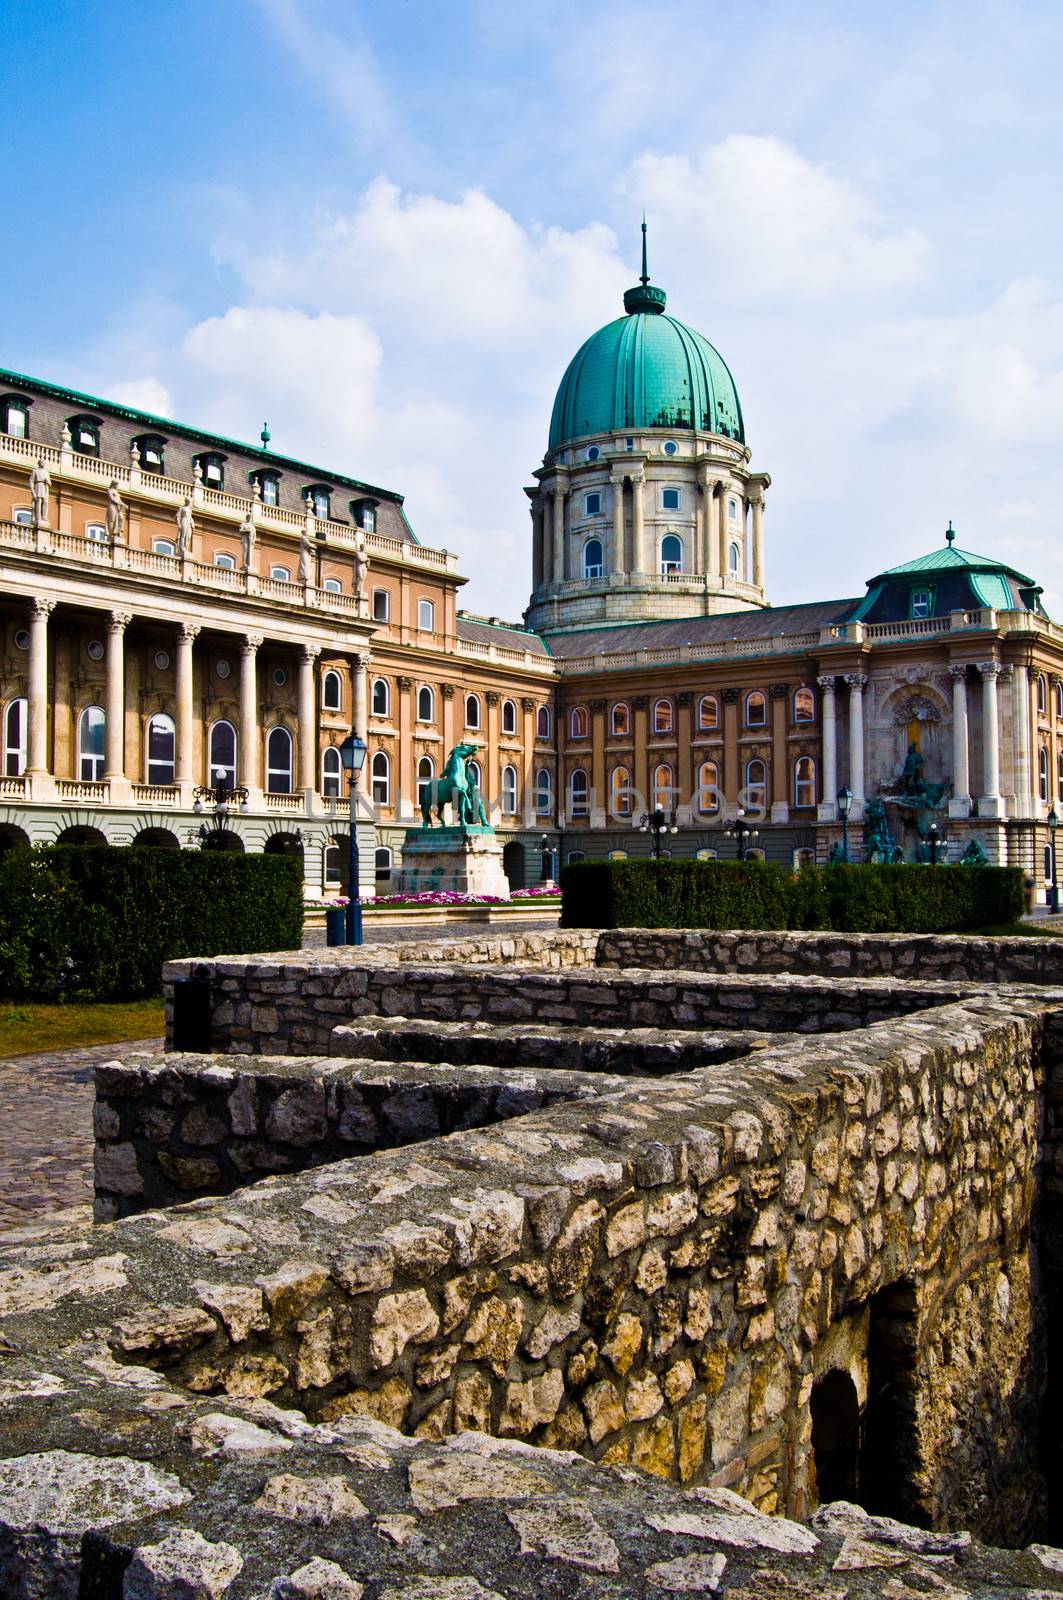 Castle of Budapest by Jule_Berlin